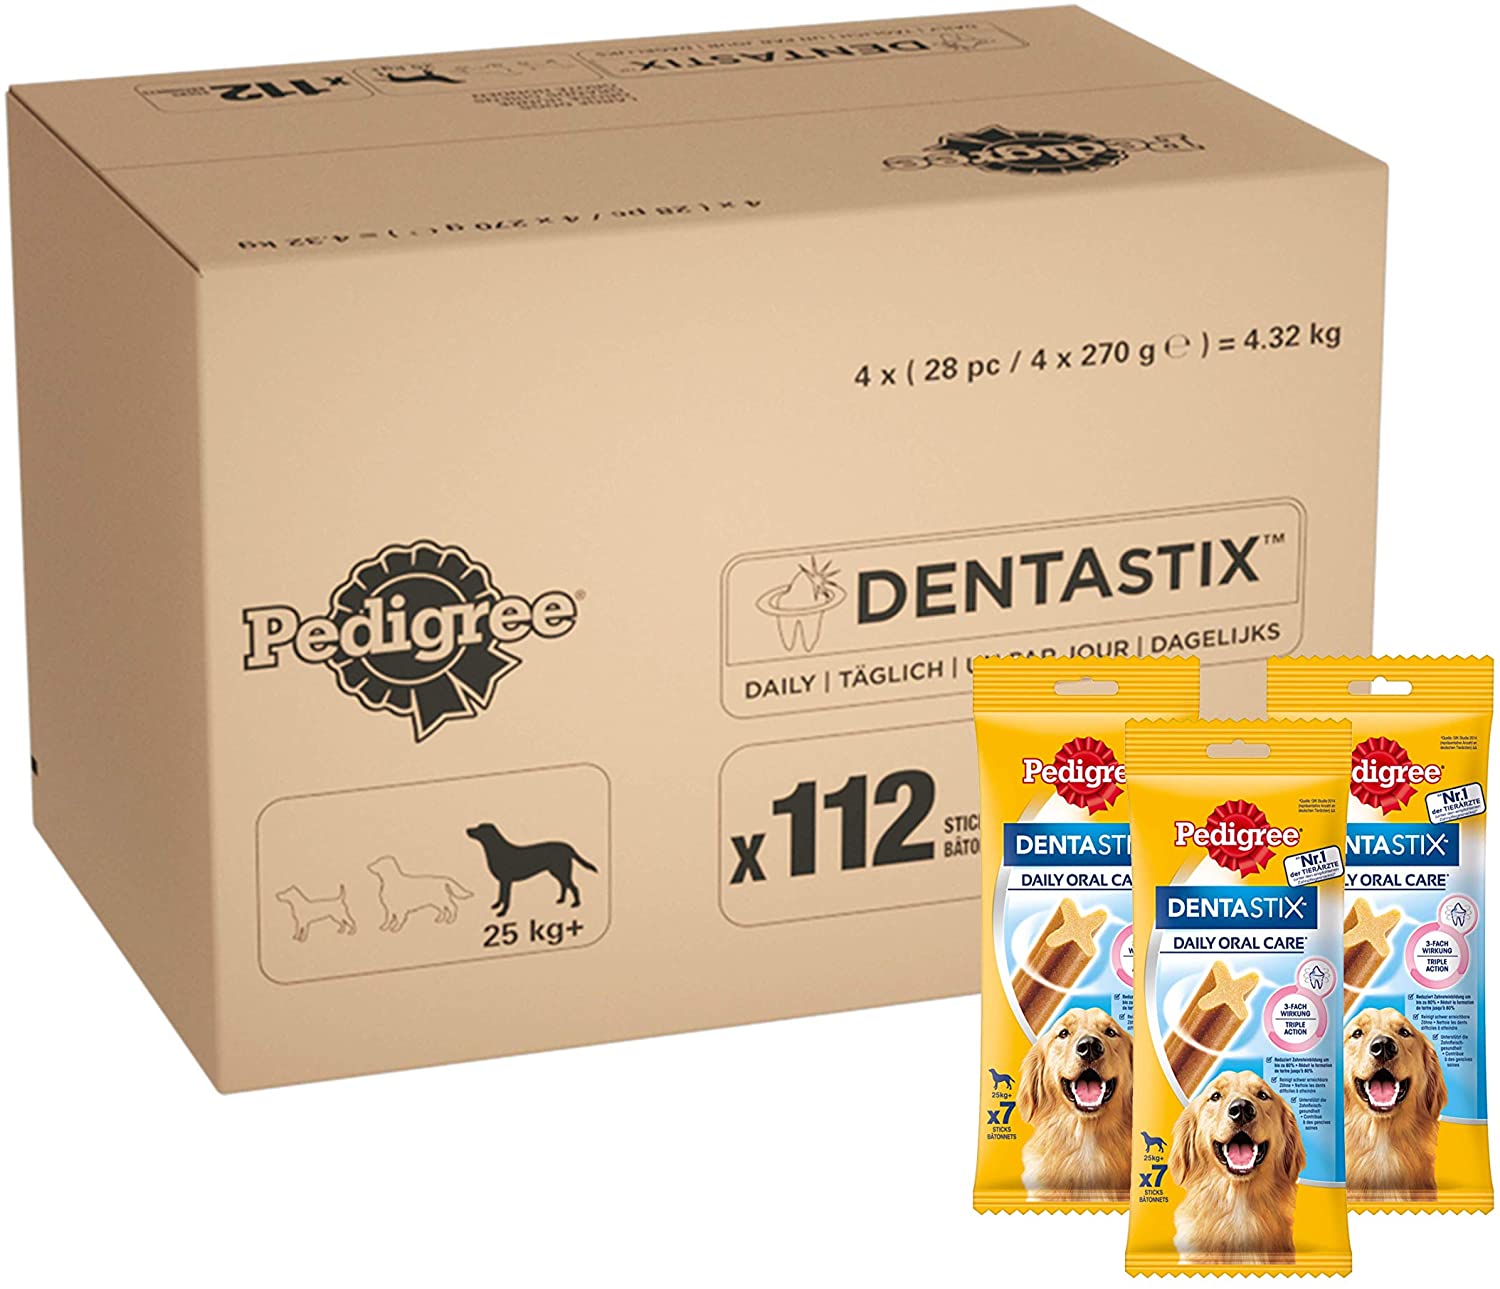  Pedigree - Barritas DentaSix para perros, 4x4x(7pc/270gr)= 4,32 kg .112 ud diaria para higiene oral 